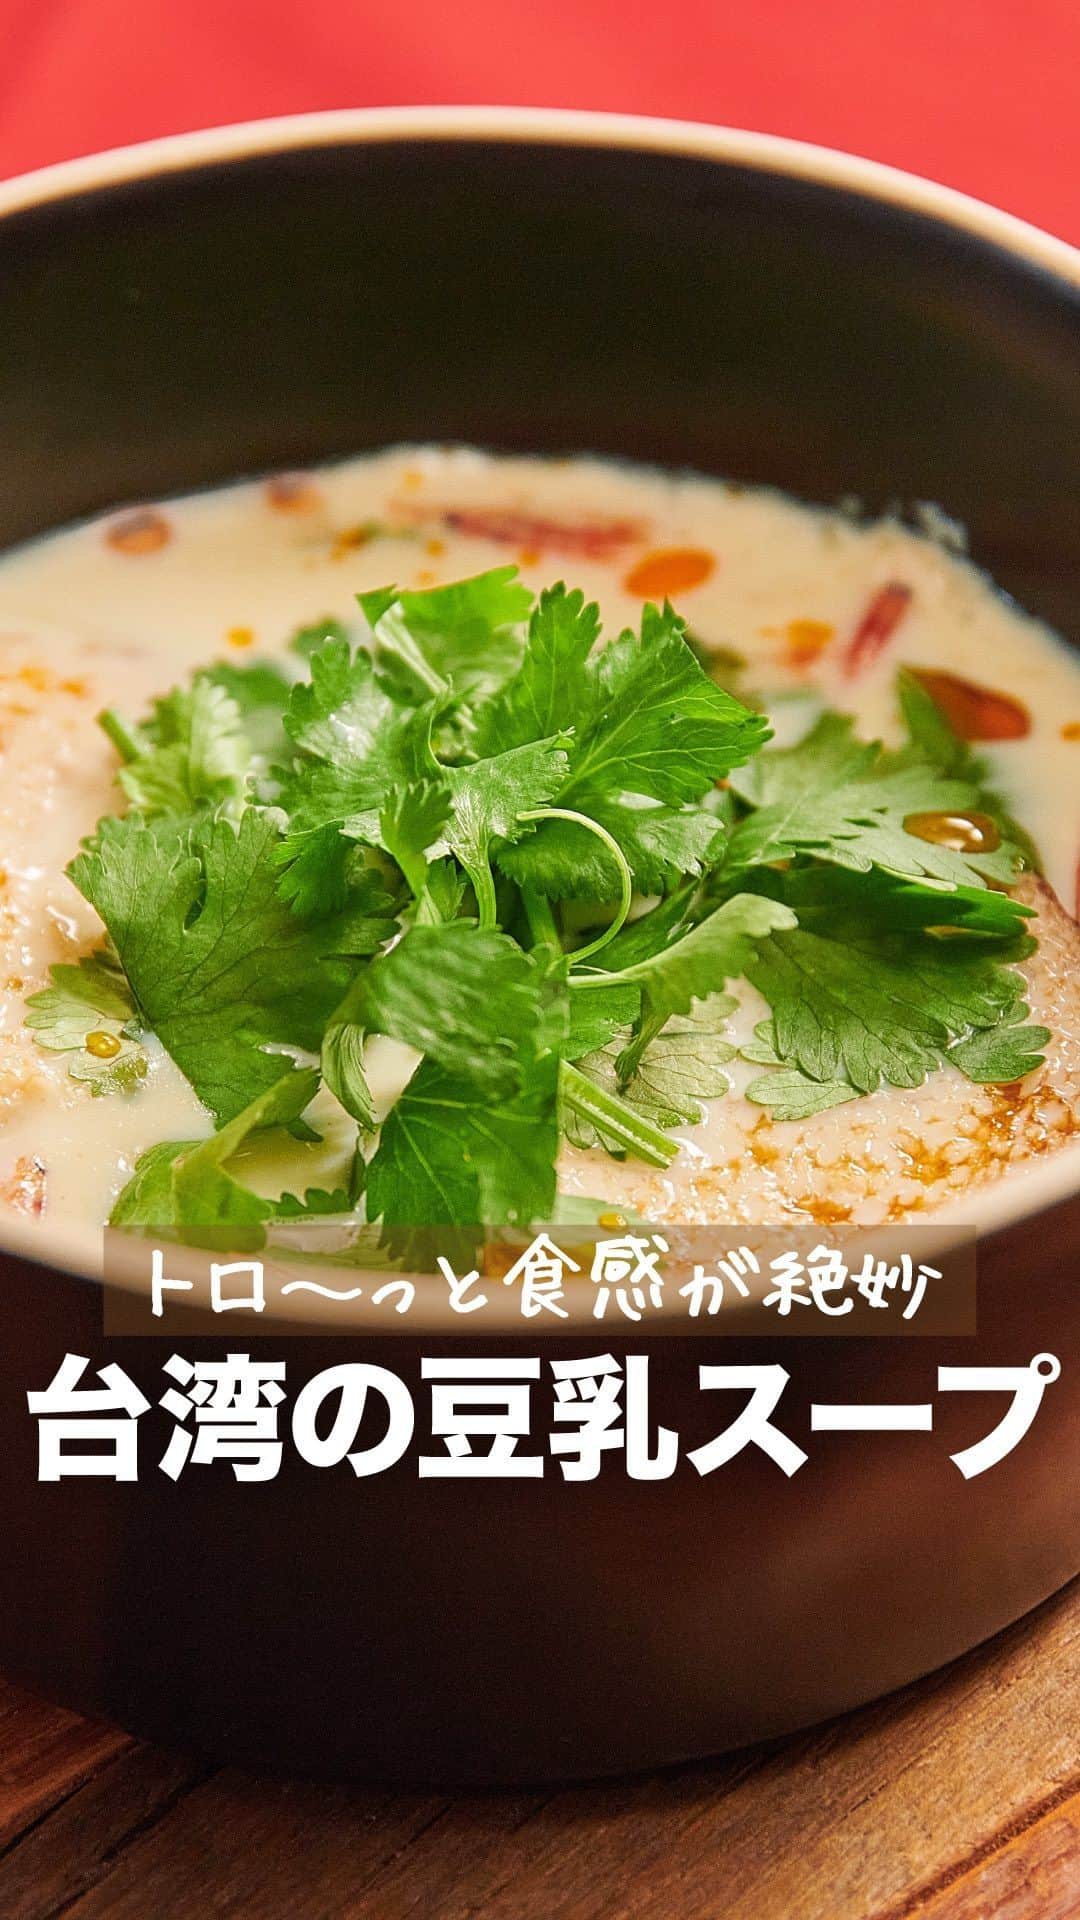 理研ビタミンのインスタグラム：「作ってみたいと思ったら『✨』とコメントして下さい♪  『台湾の豆乳スープ』  鹹豆漿(シェントウジャン)は、台湾で親しまれているトロトロの食感が特徴の豆乳スープです😋 『リケンのノンオイル 青じそ』に含まれるお酢の力で豆乳が固まり、トロトロに😊！ おうちでも手軽に台湾風スープの食感が楽しめますよ♪  作ったら #ノンオイルで天才レシピ をつけて写真を投稿して教えてください♪ レシピに関するご質問等はお気軽にコメント欄にどうぞ😌💕  カロリー 169kcal 塩分 2.5g (カロリー・塩分は1人分の数値)  【材料】2人分 豆乳(無調整)　400ml ザーサイ　20g 桜えび　5g パクチー　適量 バゲット　2枚 ごま油　適量 リケンのノンオイル青じそ　大さじ2 ラー油　適量  【つくり方】 ①パクチーはざく切りに、ザーサイは粗みじん切りにする。 ②バゲットの表面にごま油を染み込ませ、トースターでカリカリになるまで焼く。 ③鍋に豆乳を入れ、沸騰直前まで加熱する。 ④器に『リケンのノンオイル 青じそ』・ザーサイ・桜えびを入れ、③を注ぐ。 ②を半分に割ってのせ、上にパクチーをのせる。ラー油を回しかける。  #リケンのノンオイル #天才調味料  #ドレッシング #調味料 #今日の夕飯 #晩ご飯  #豆乳 #台湾料理 #台湾 #スープ #パクチー」